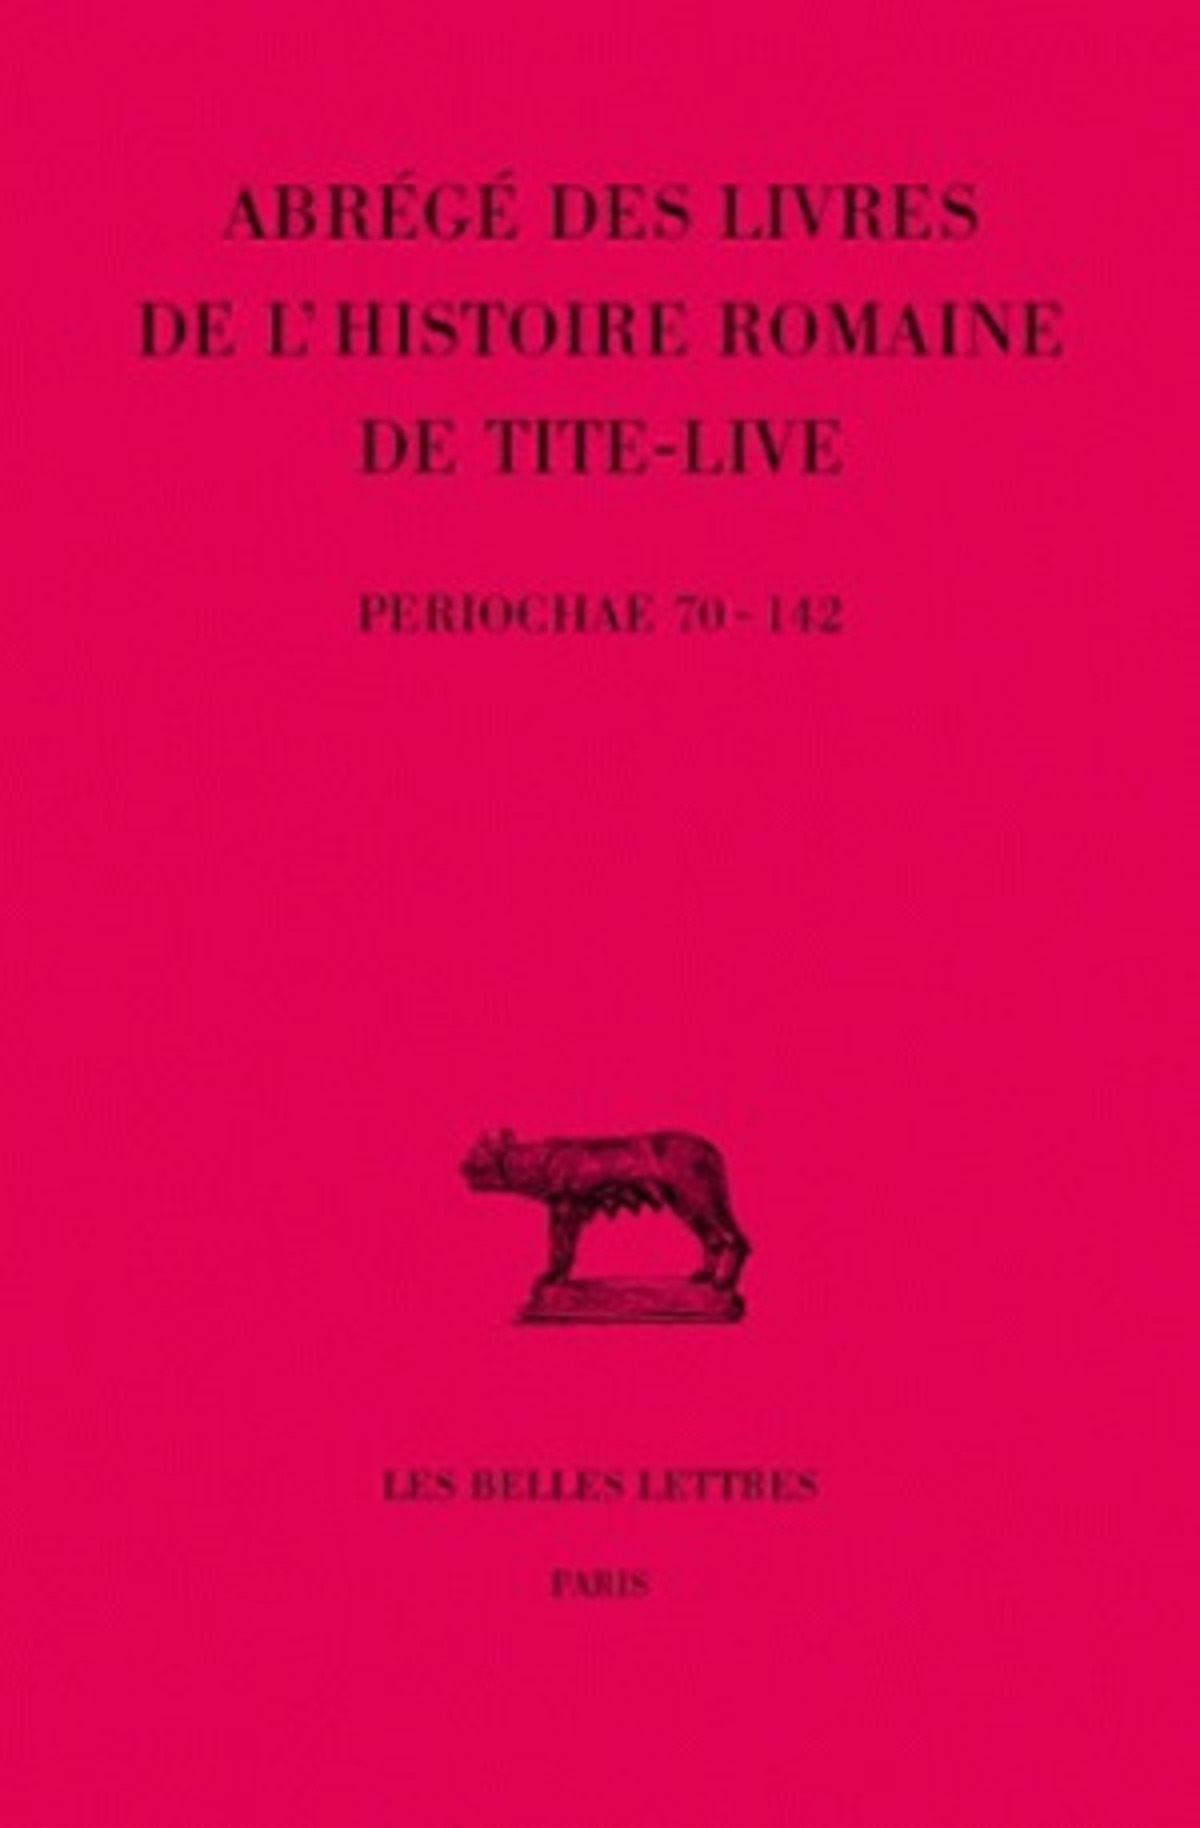 Abrégés des livres de l'Histoire romaine de Tite-Live. Tome XXXIV, 2e partie : "Periochae" transmises par les manuscrits (Periochae 70-142) et par le papyrus d'Oxyrhynchos